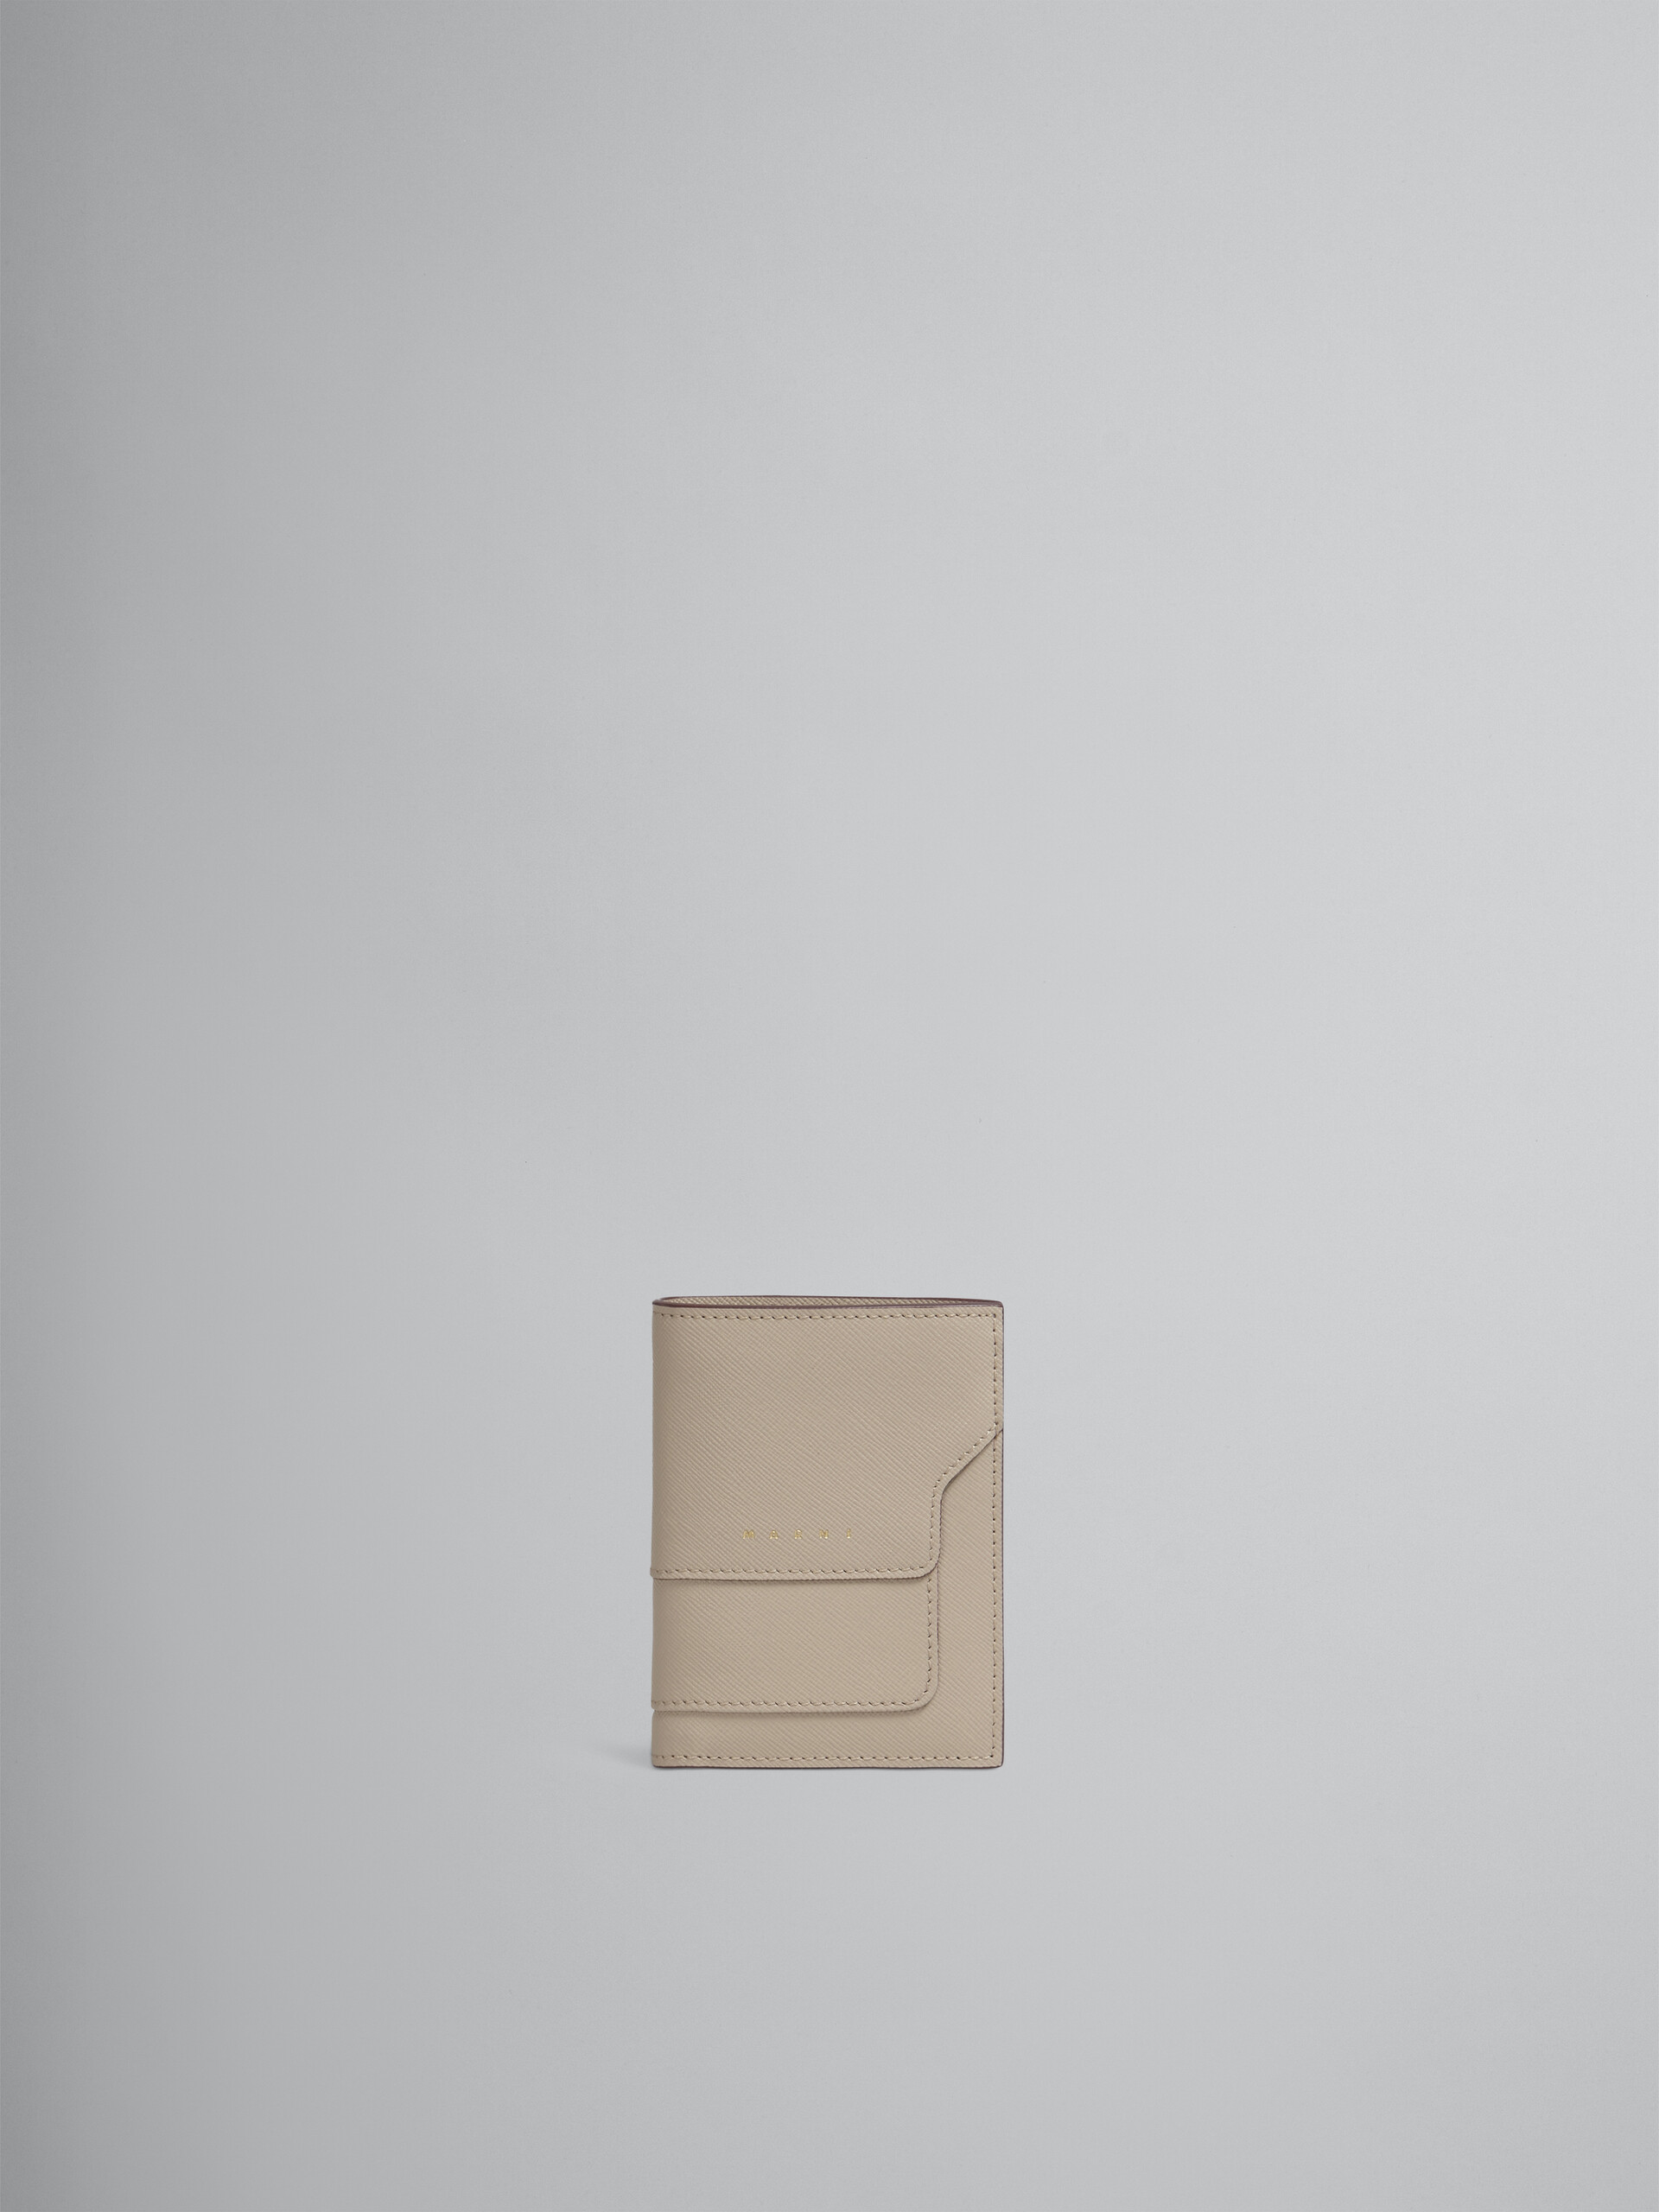 Beige saffiano leather bi-fold wallet